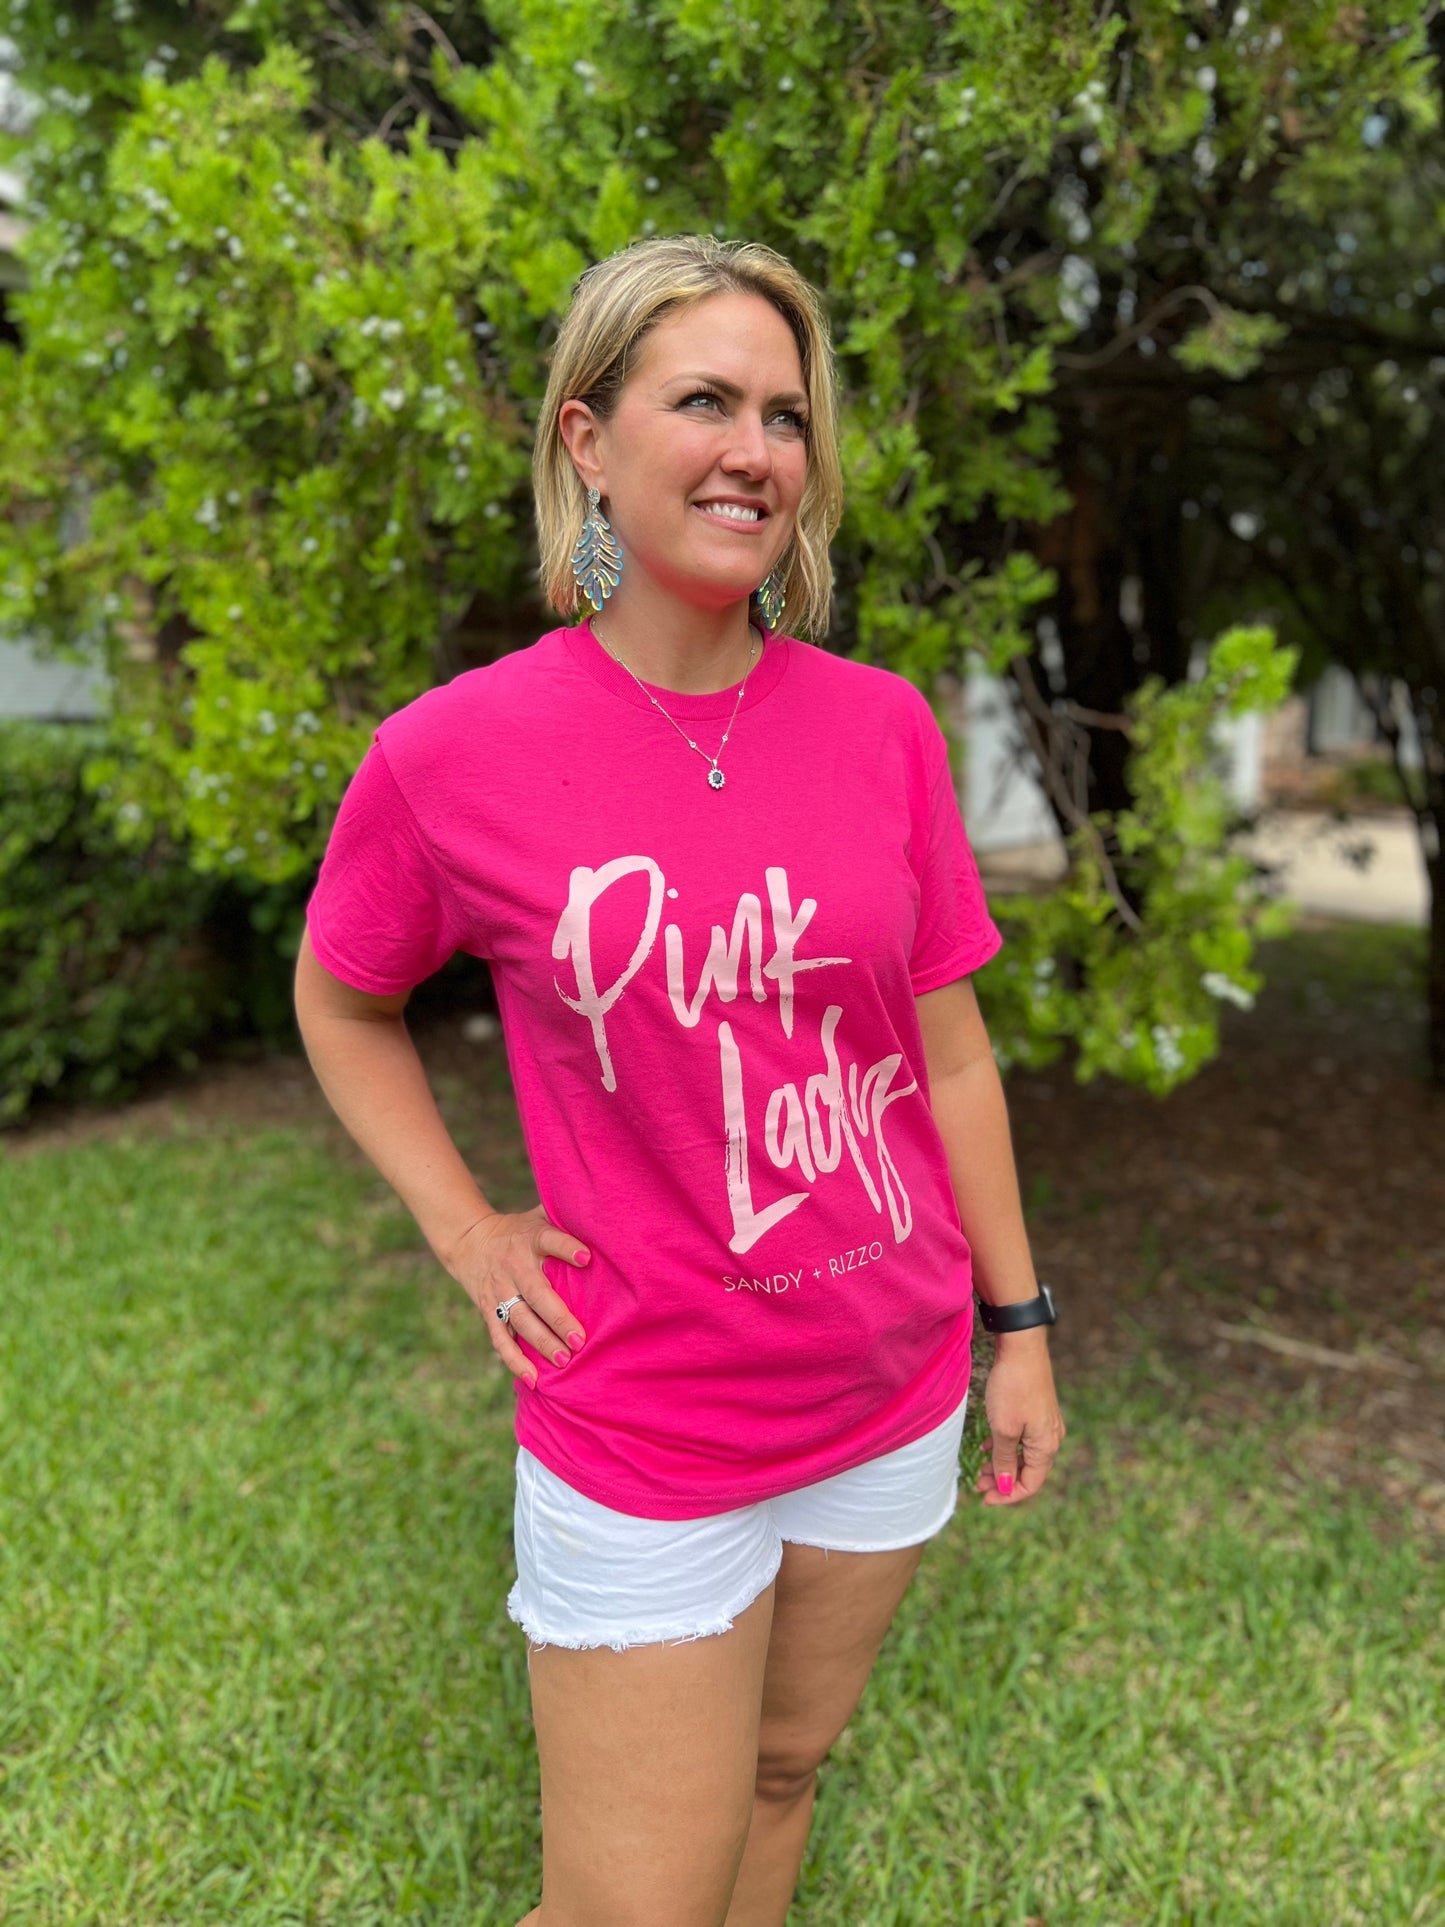 “Pink Lady” t-shirt